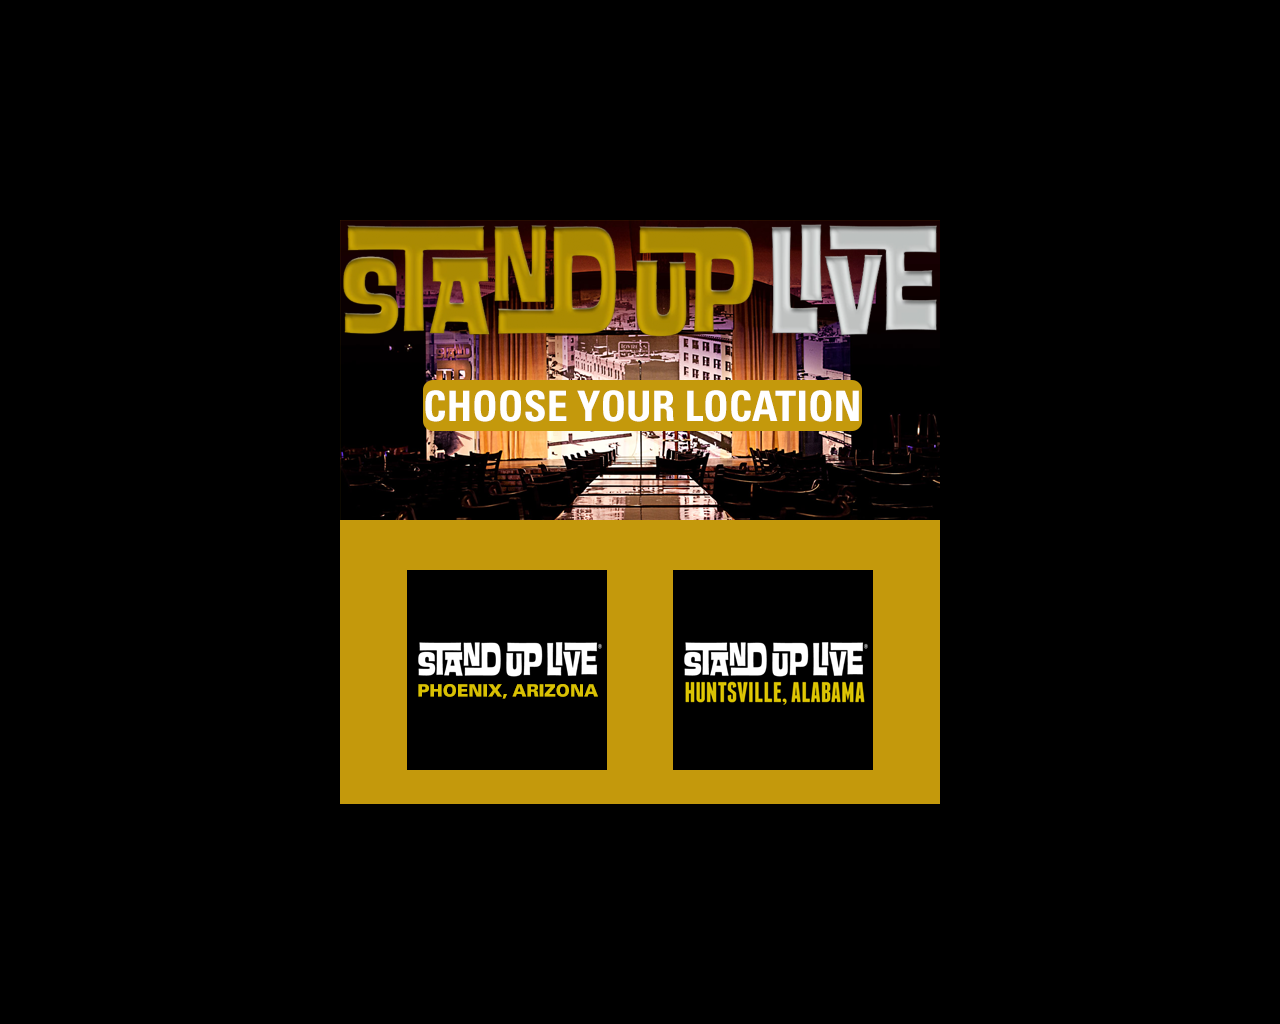 standuplive.com